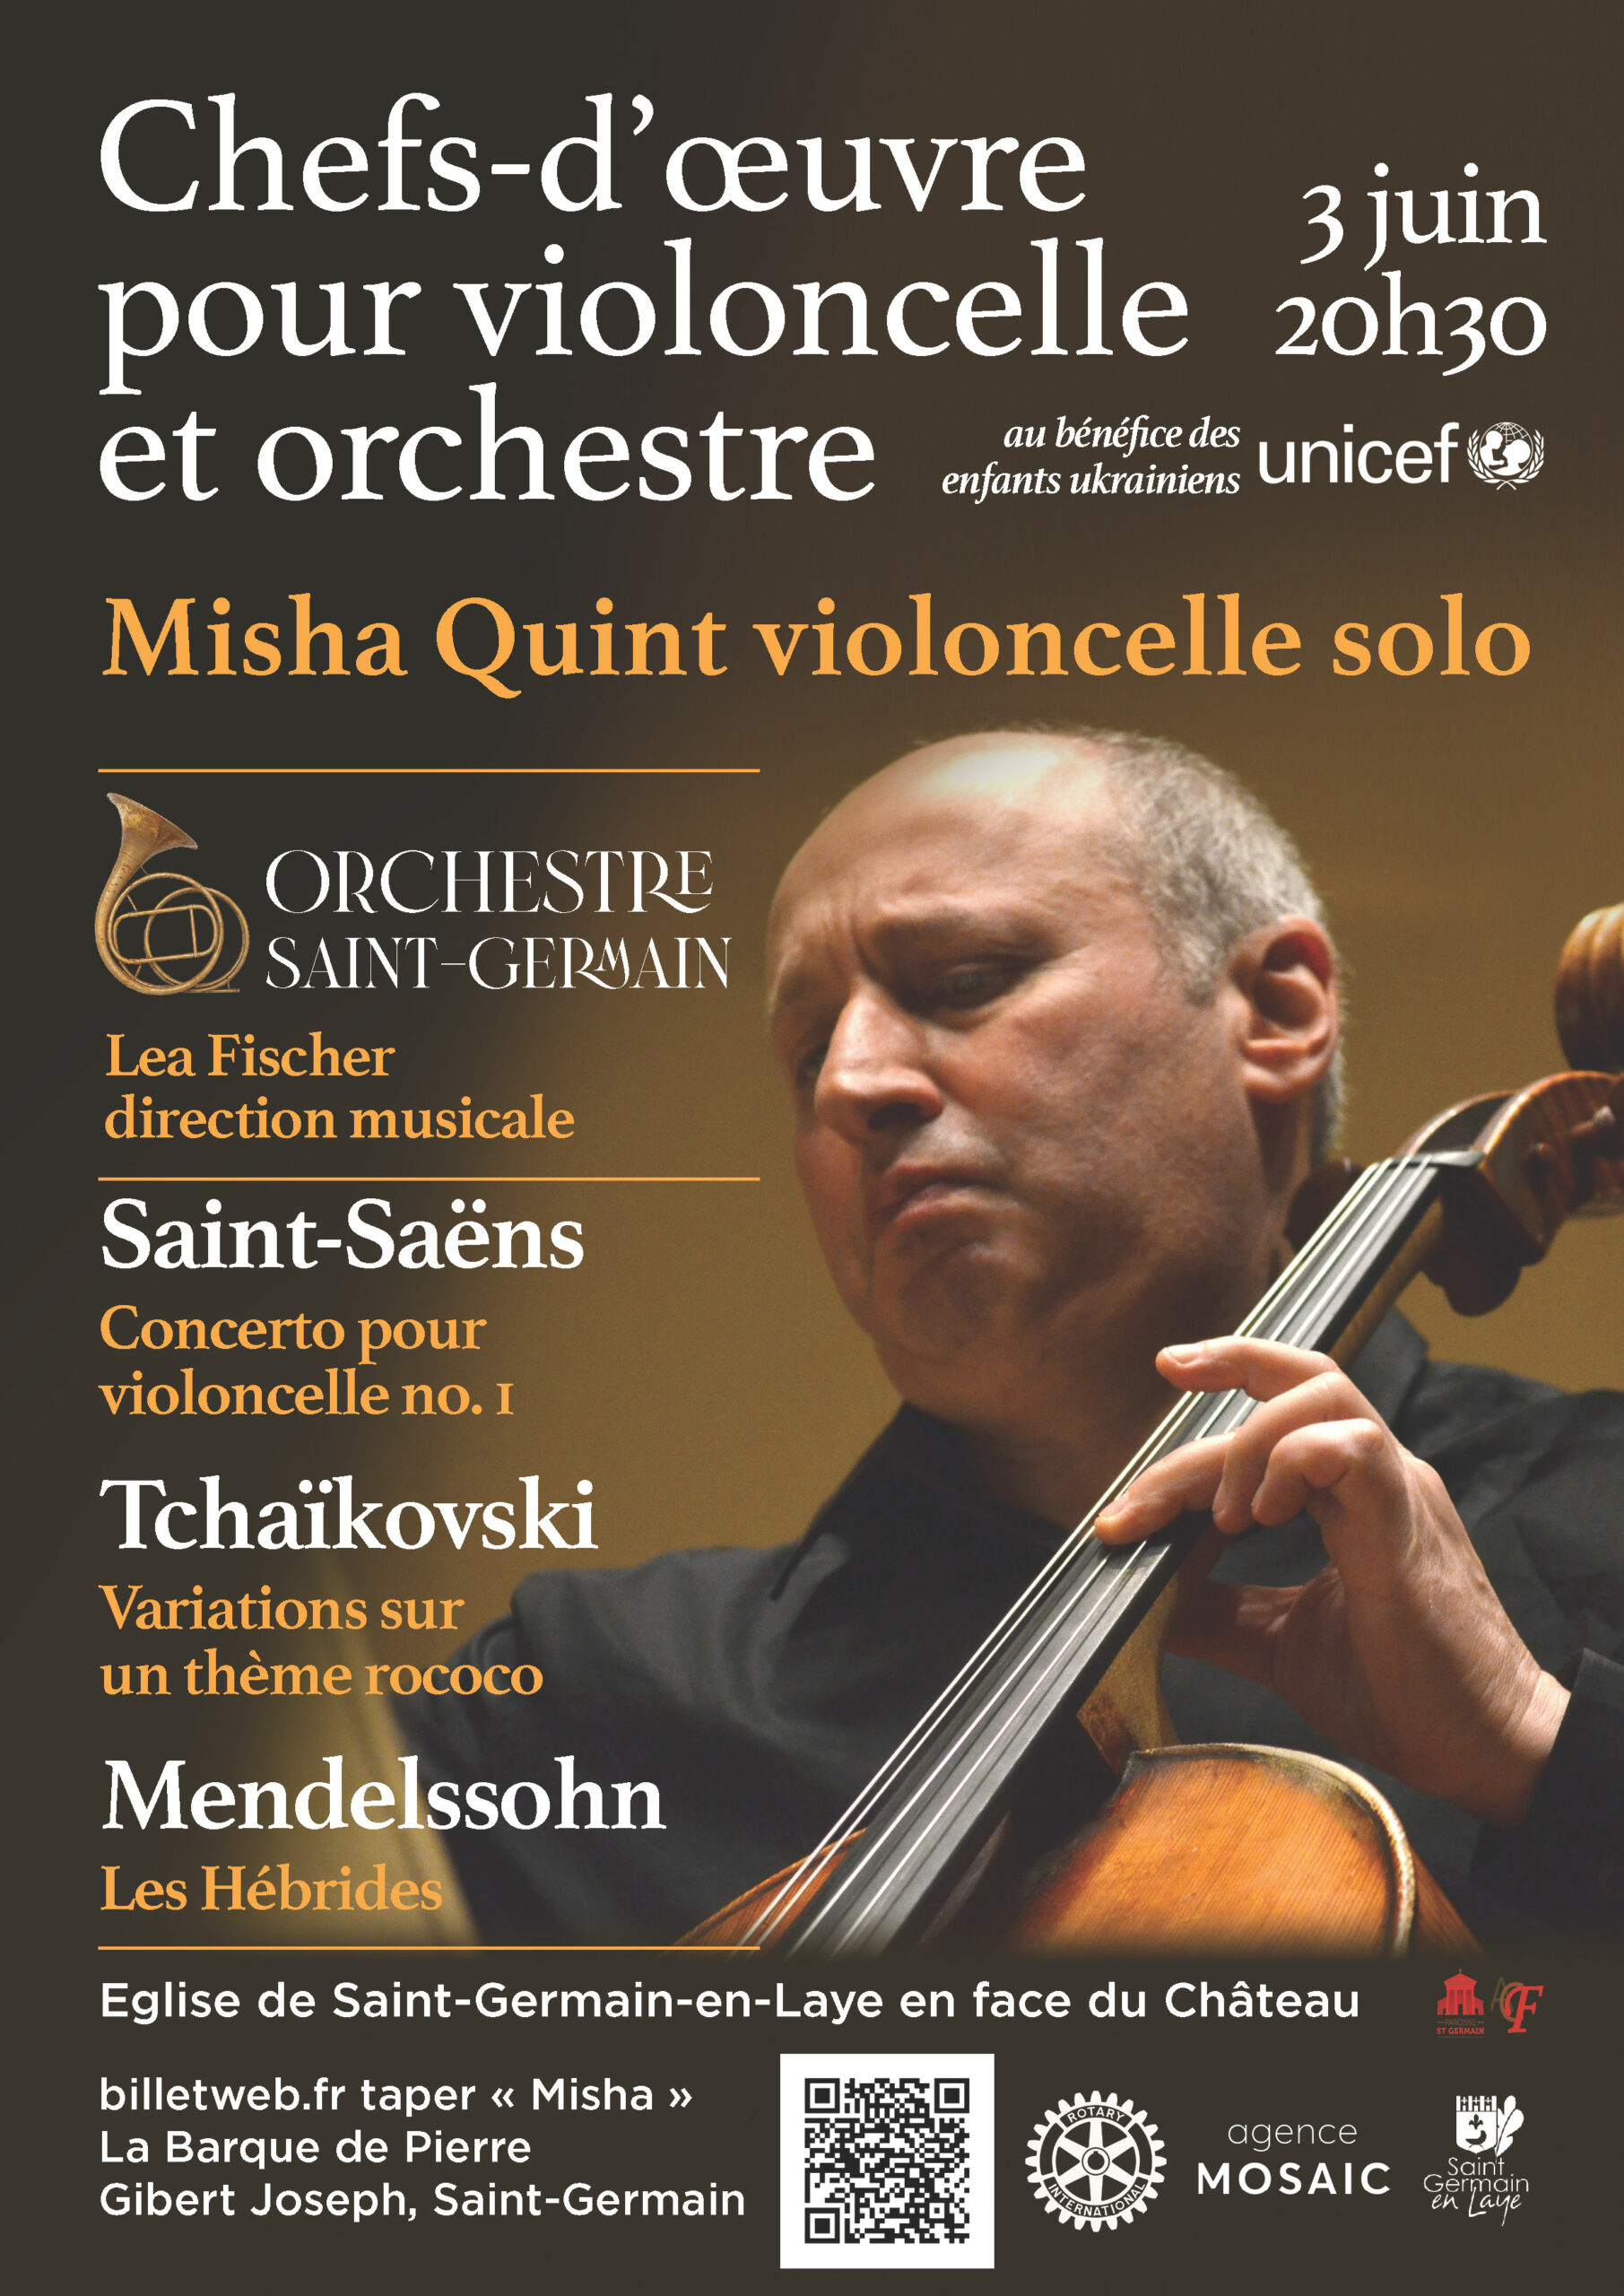 Event Orchestre Saint-Germain